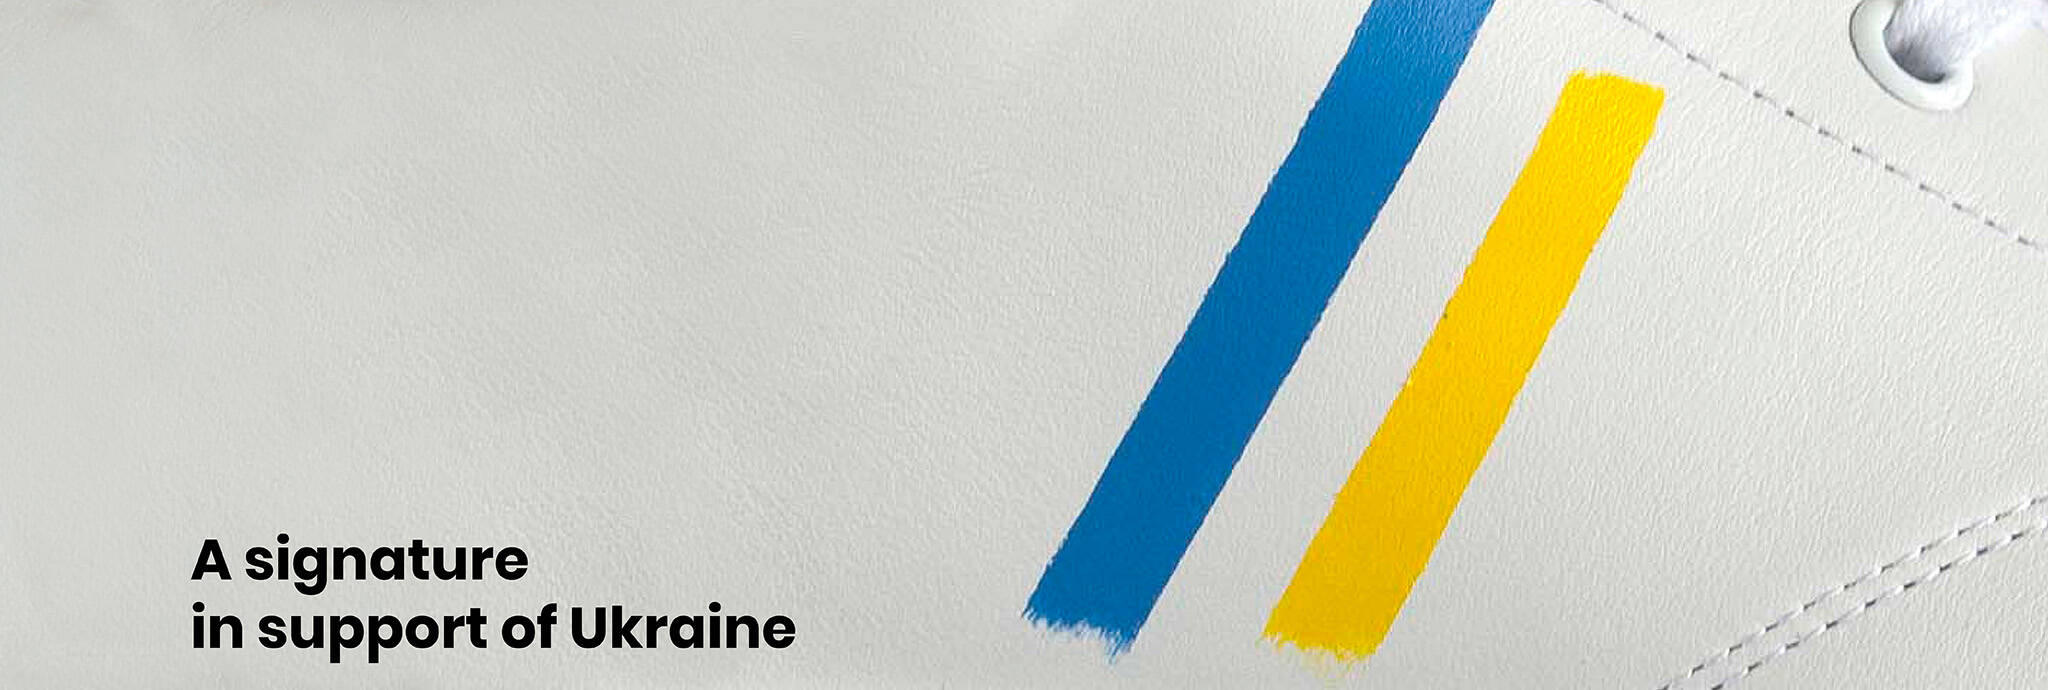 A signature in support of Ukraine